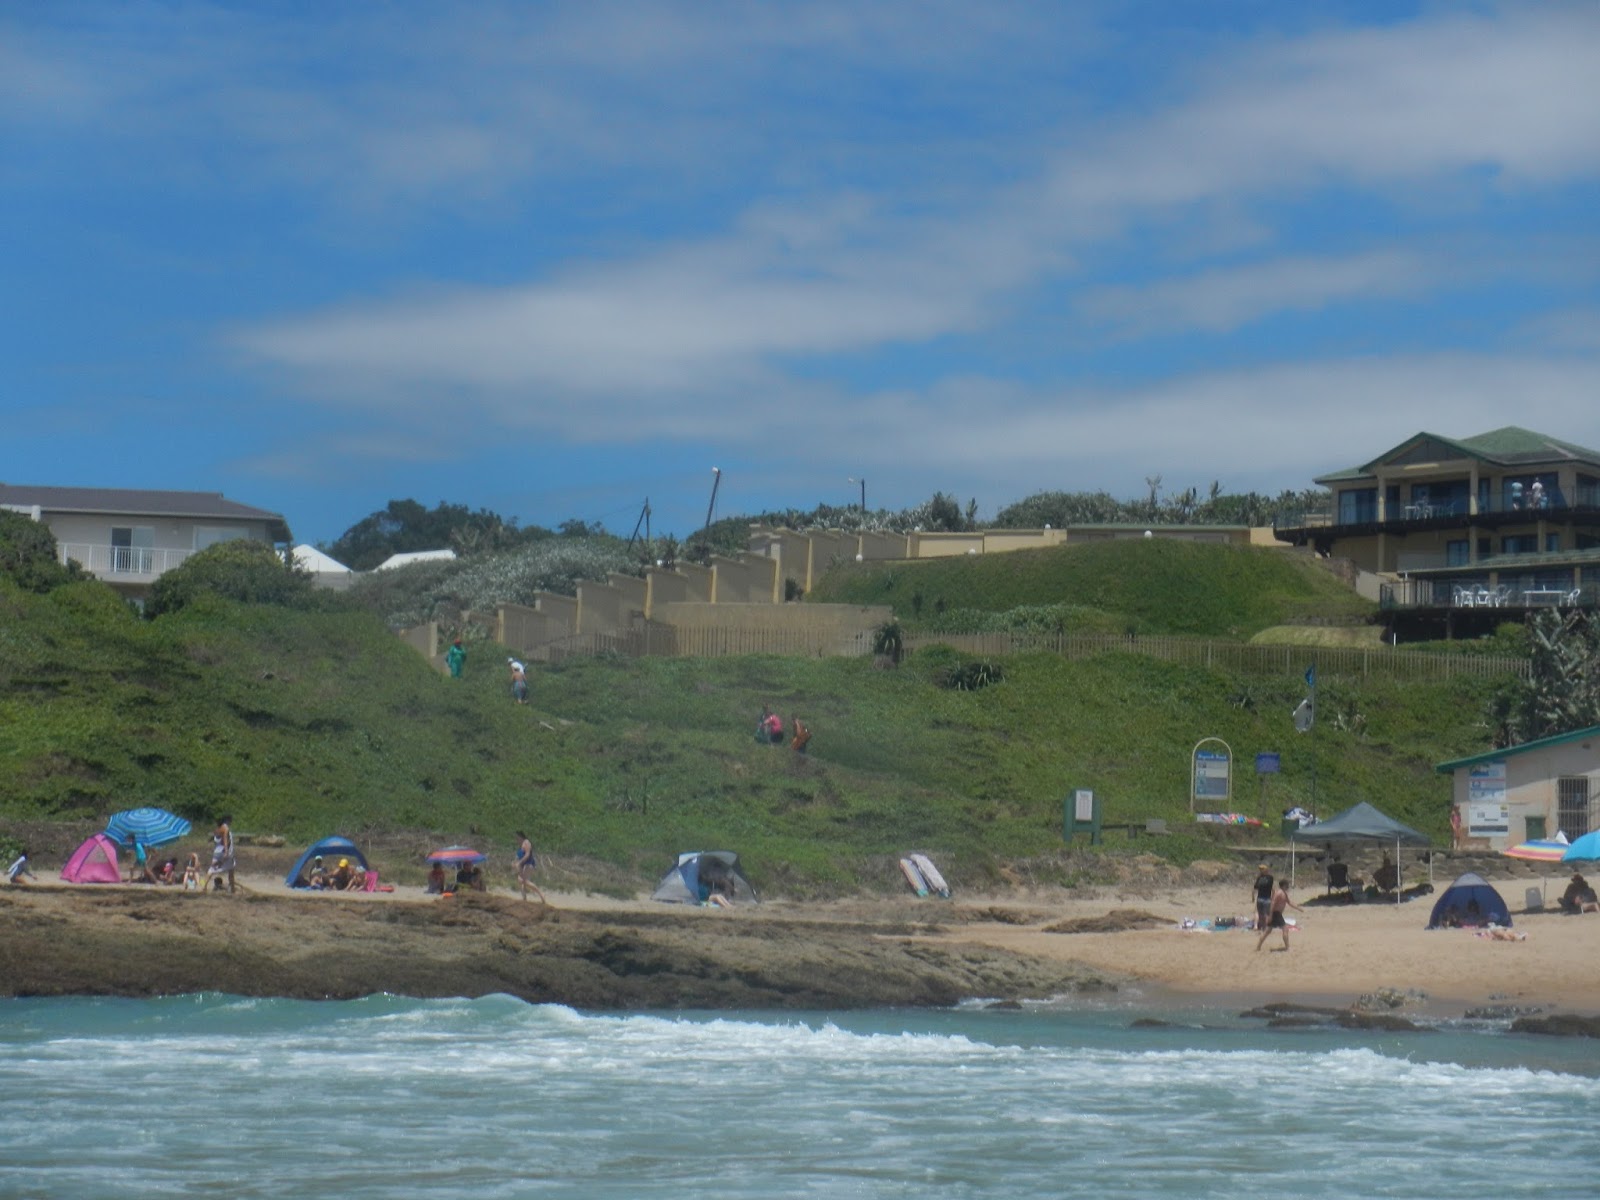 Zdjęcie Umzumbe beach położony w naturalnym obszarze